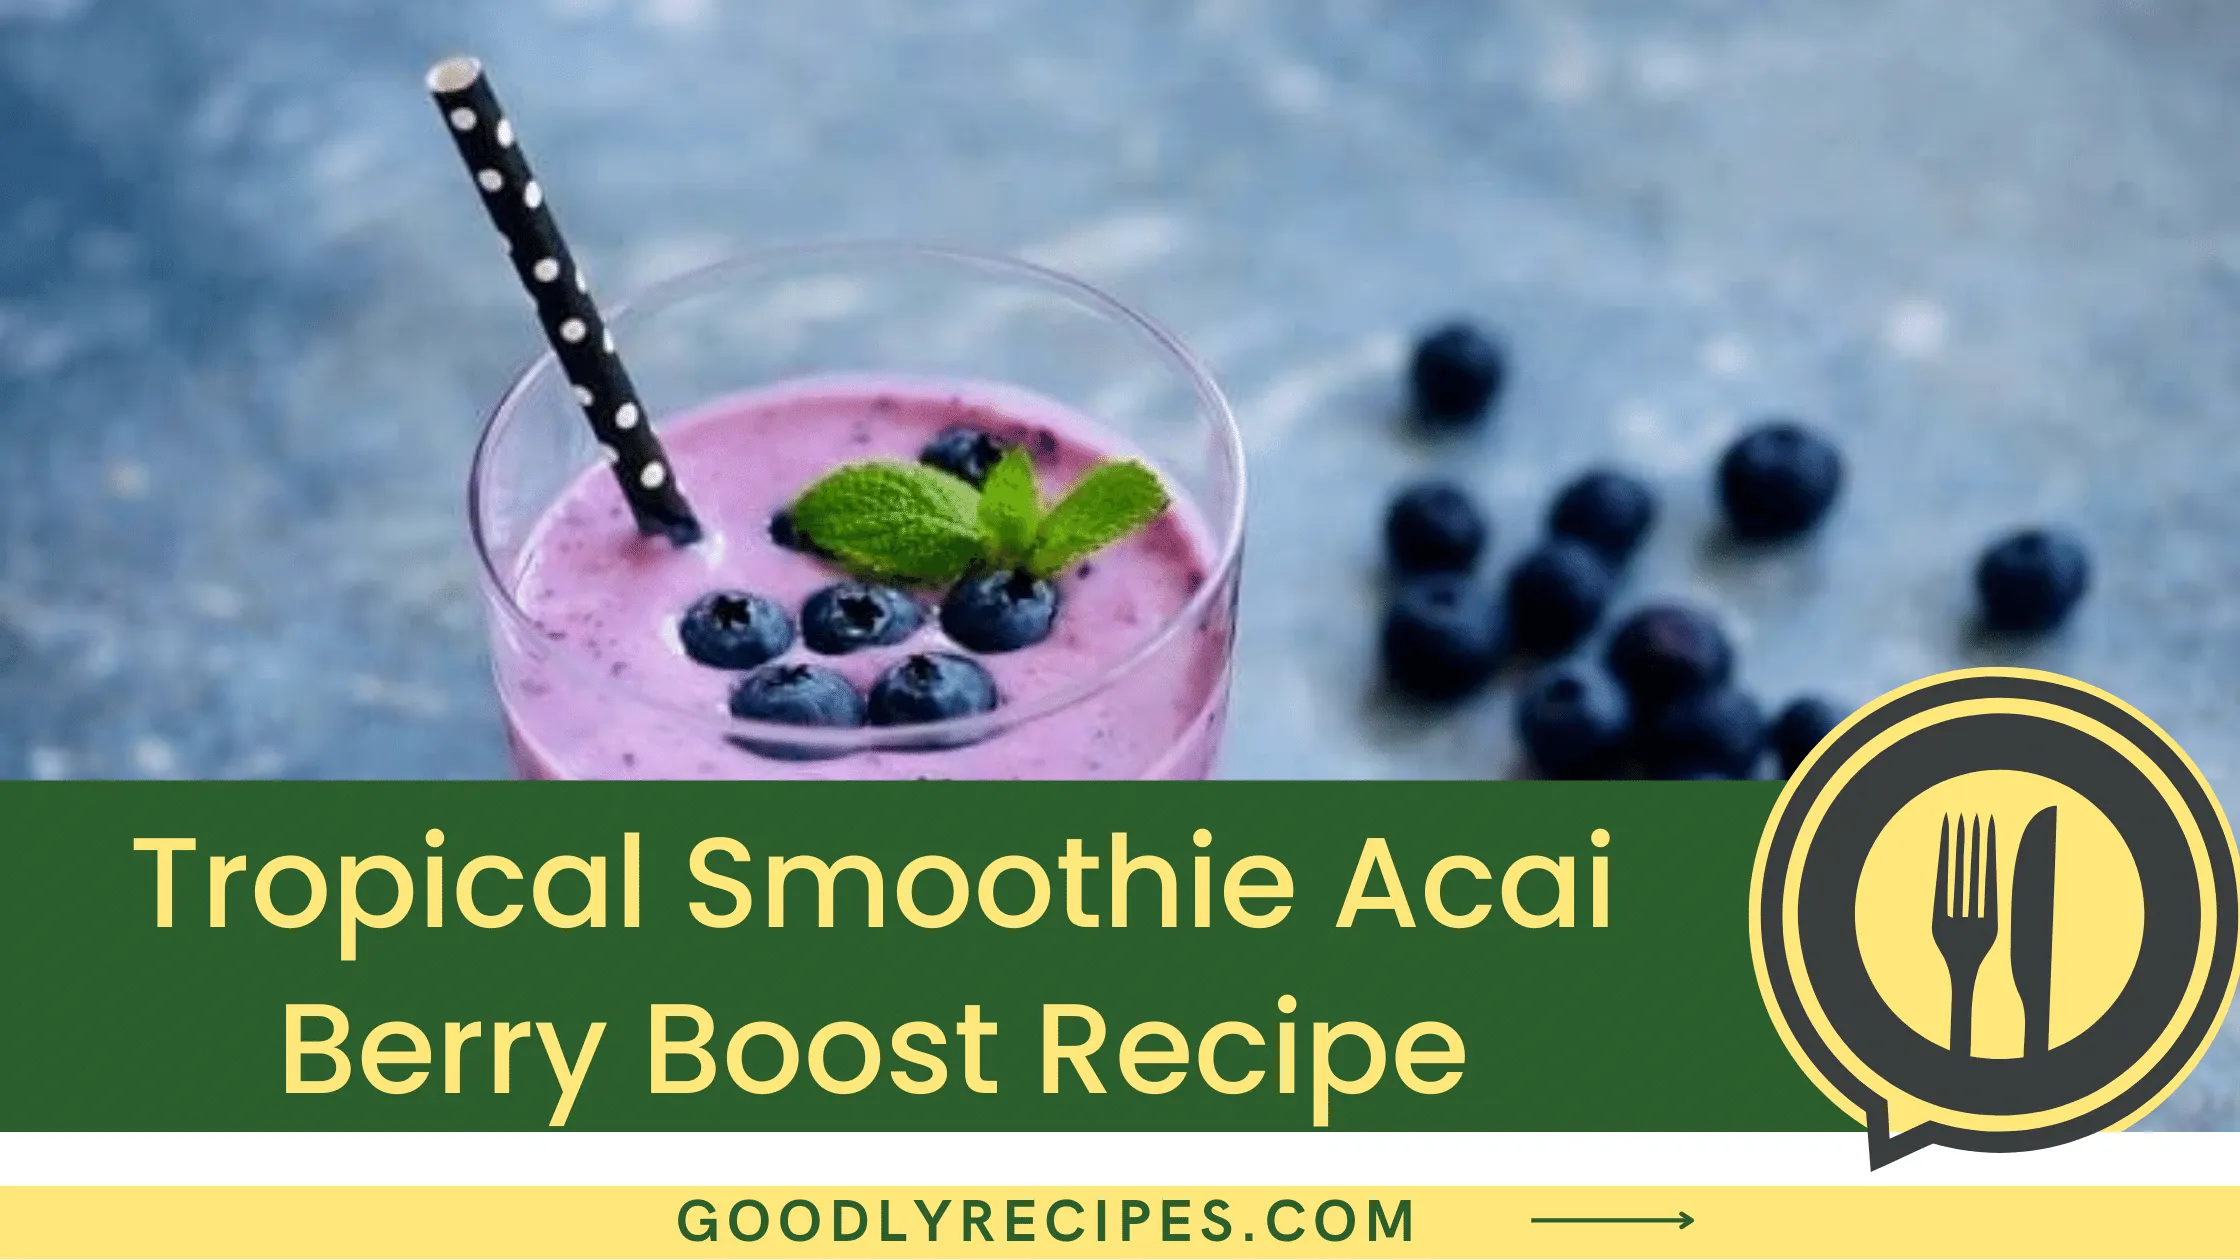 Tropical Smoothie Acai Berry Boost Recipe